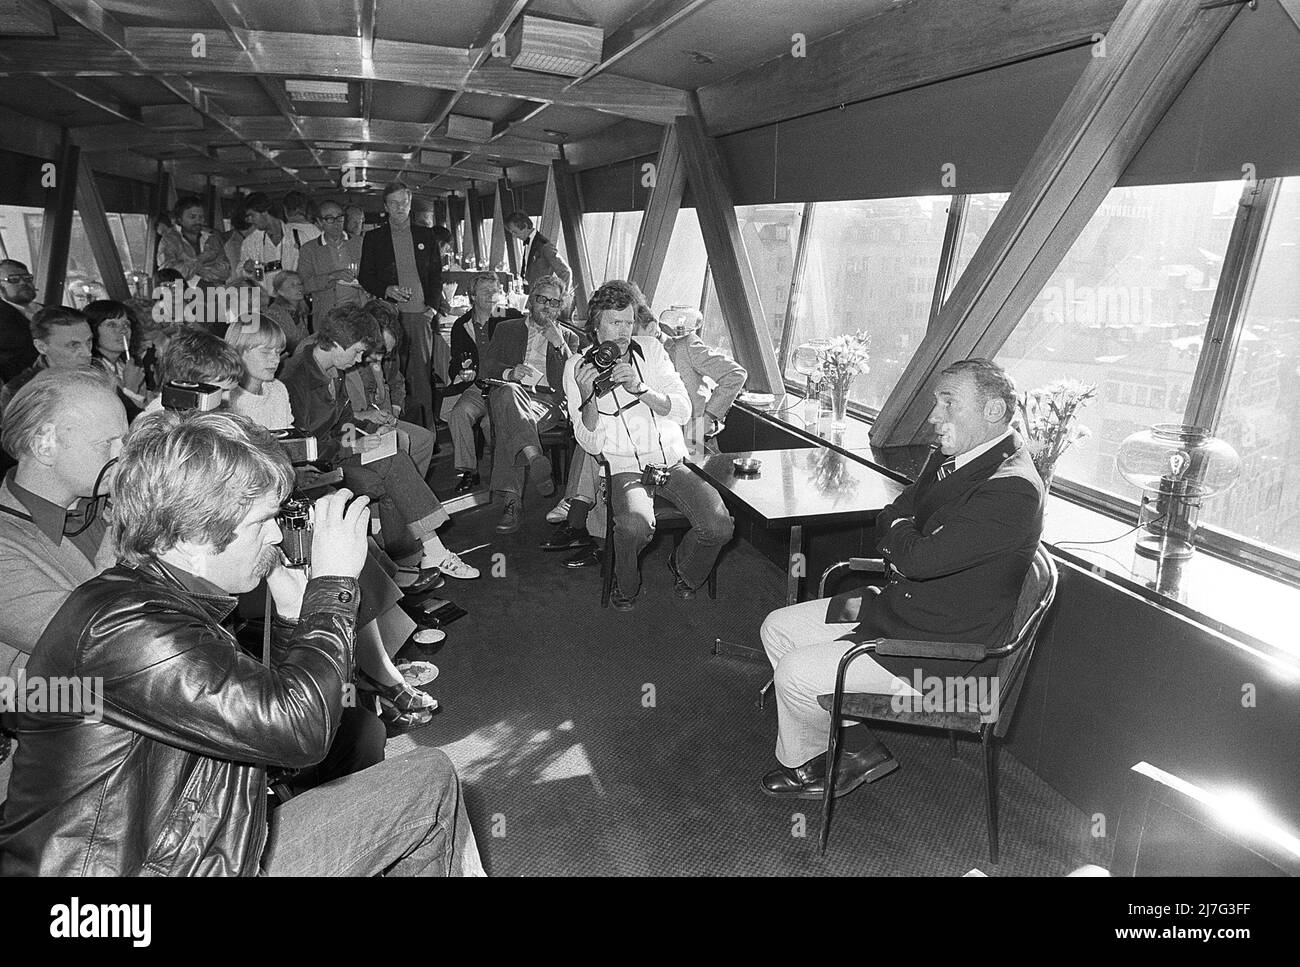 Mel Brooks. Amerikanischer Filmregisseur und Schauspieler. Bild 1974 während einer Pressekonferenz bei einem Besuch in Schweden. Stockfoto